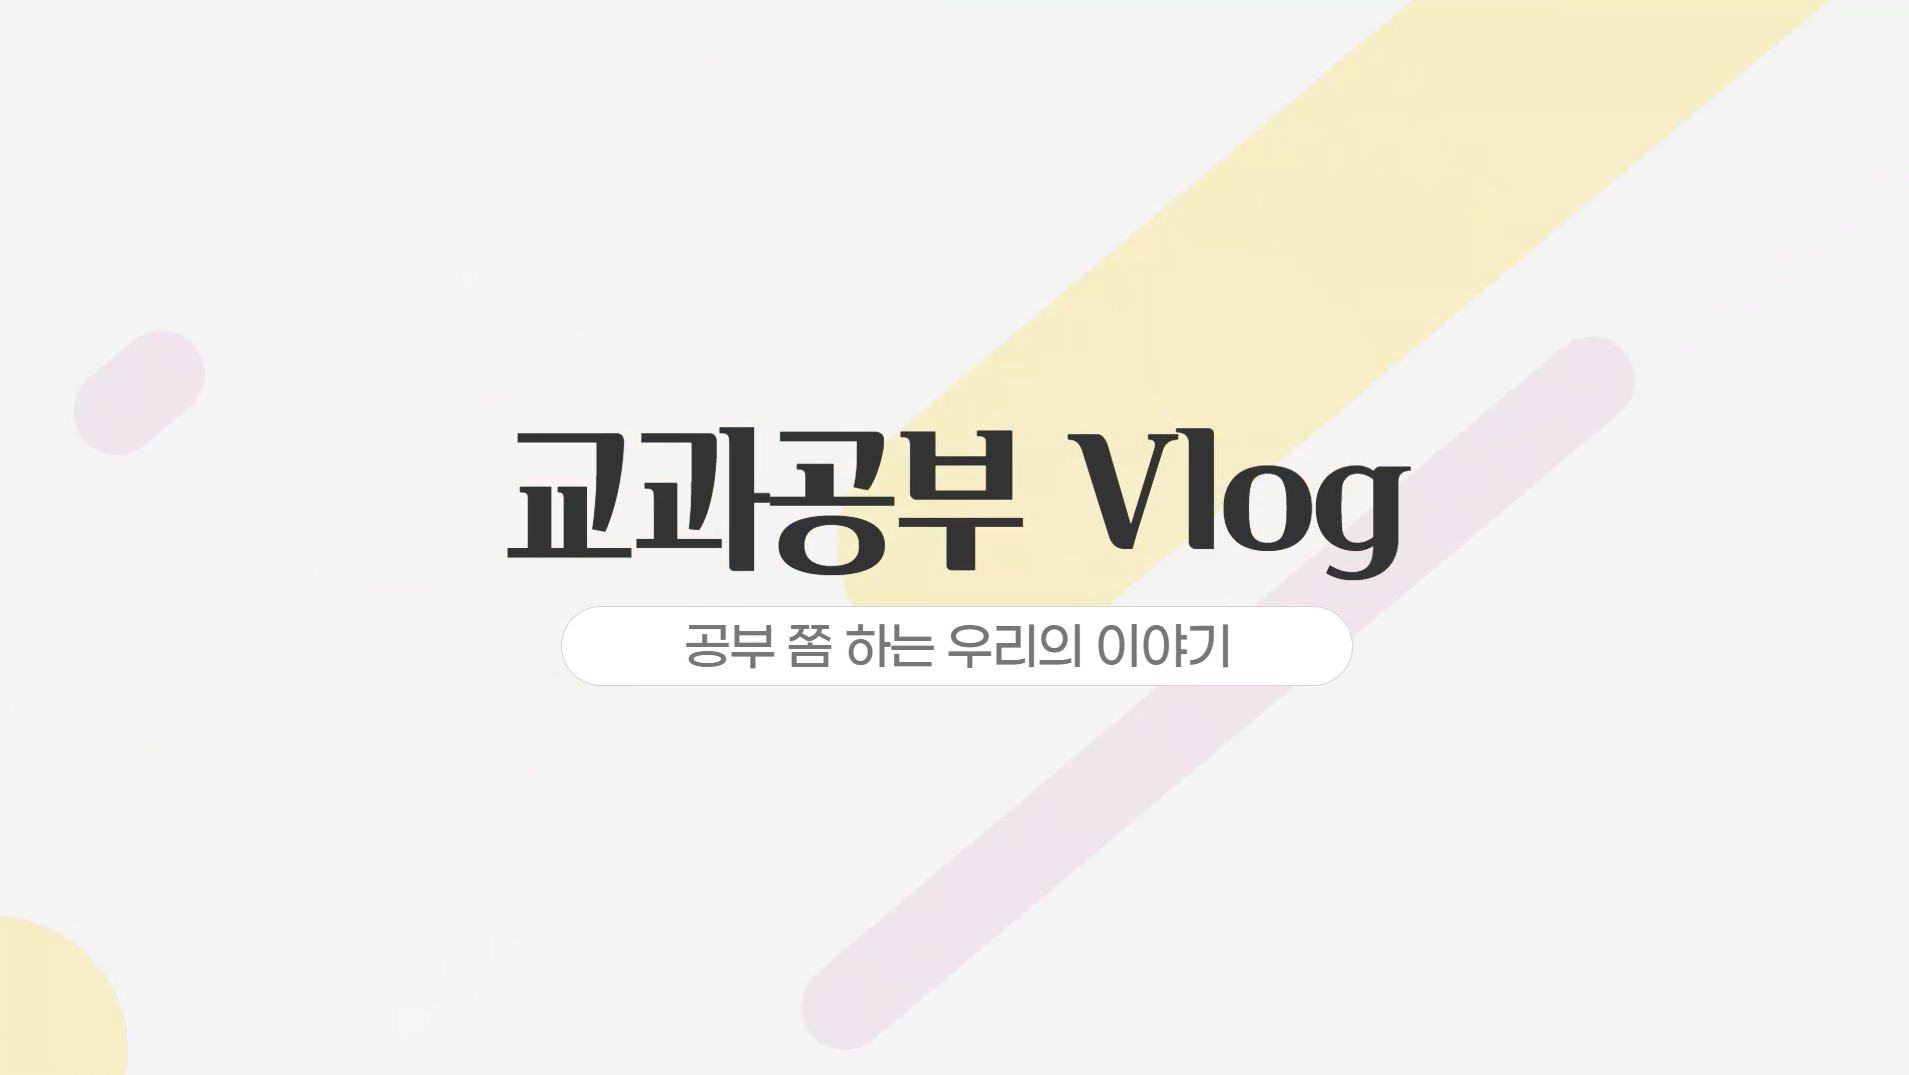 [청년고용정책홍보단] 2조 교과공부 Vlog